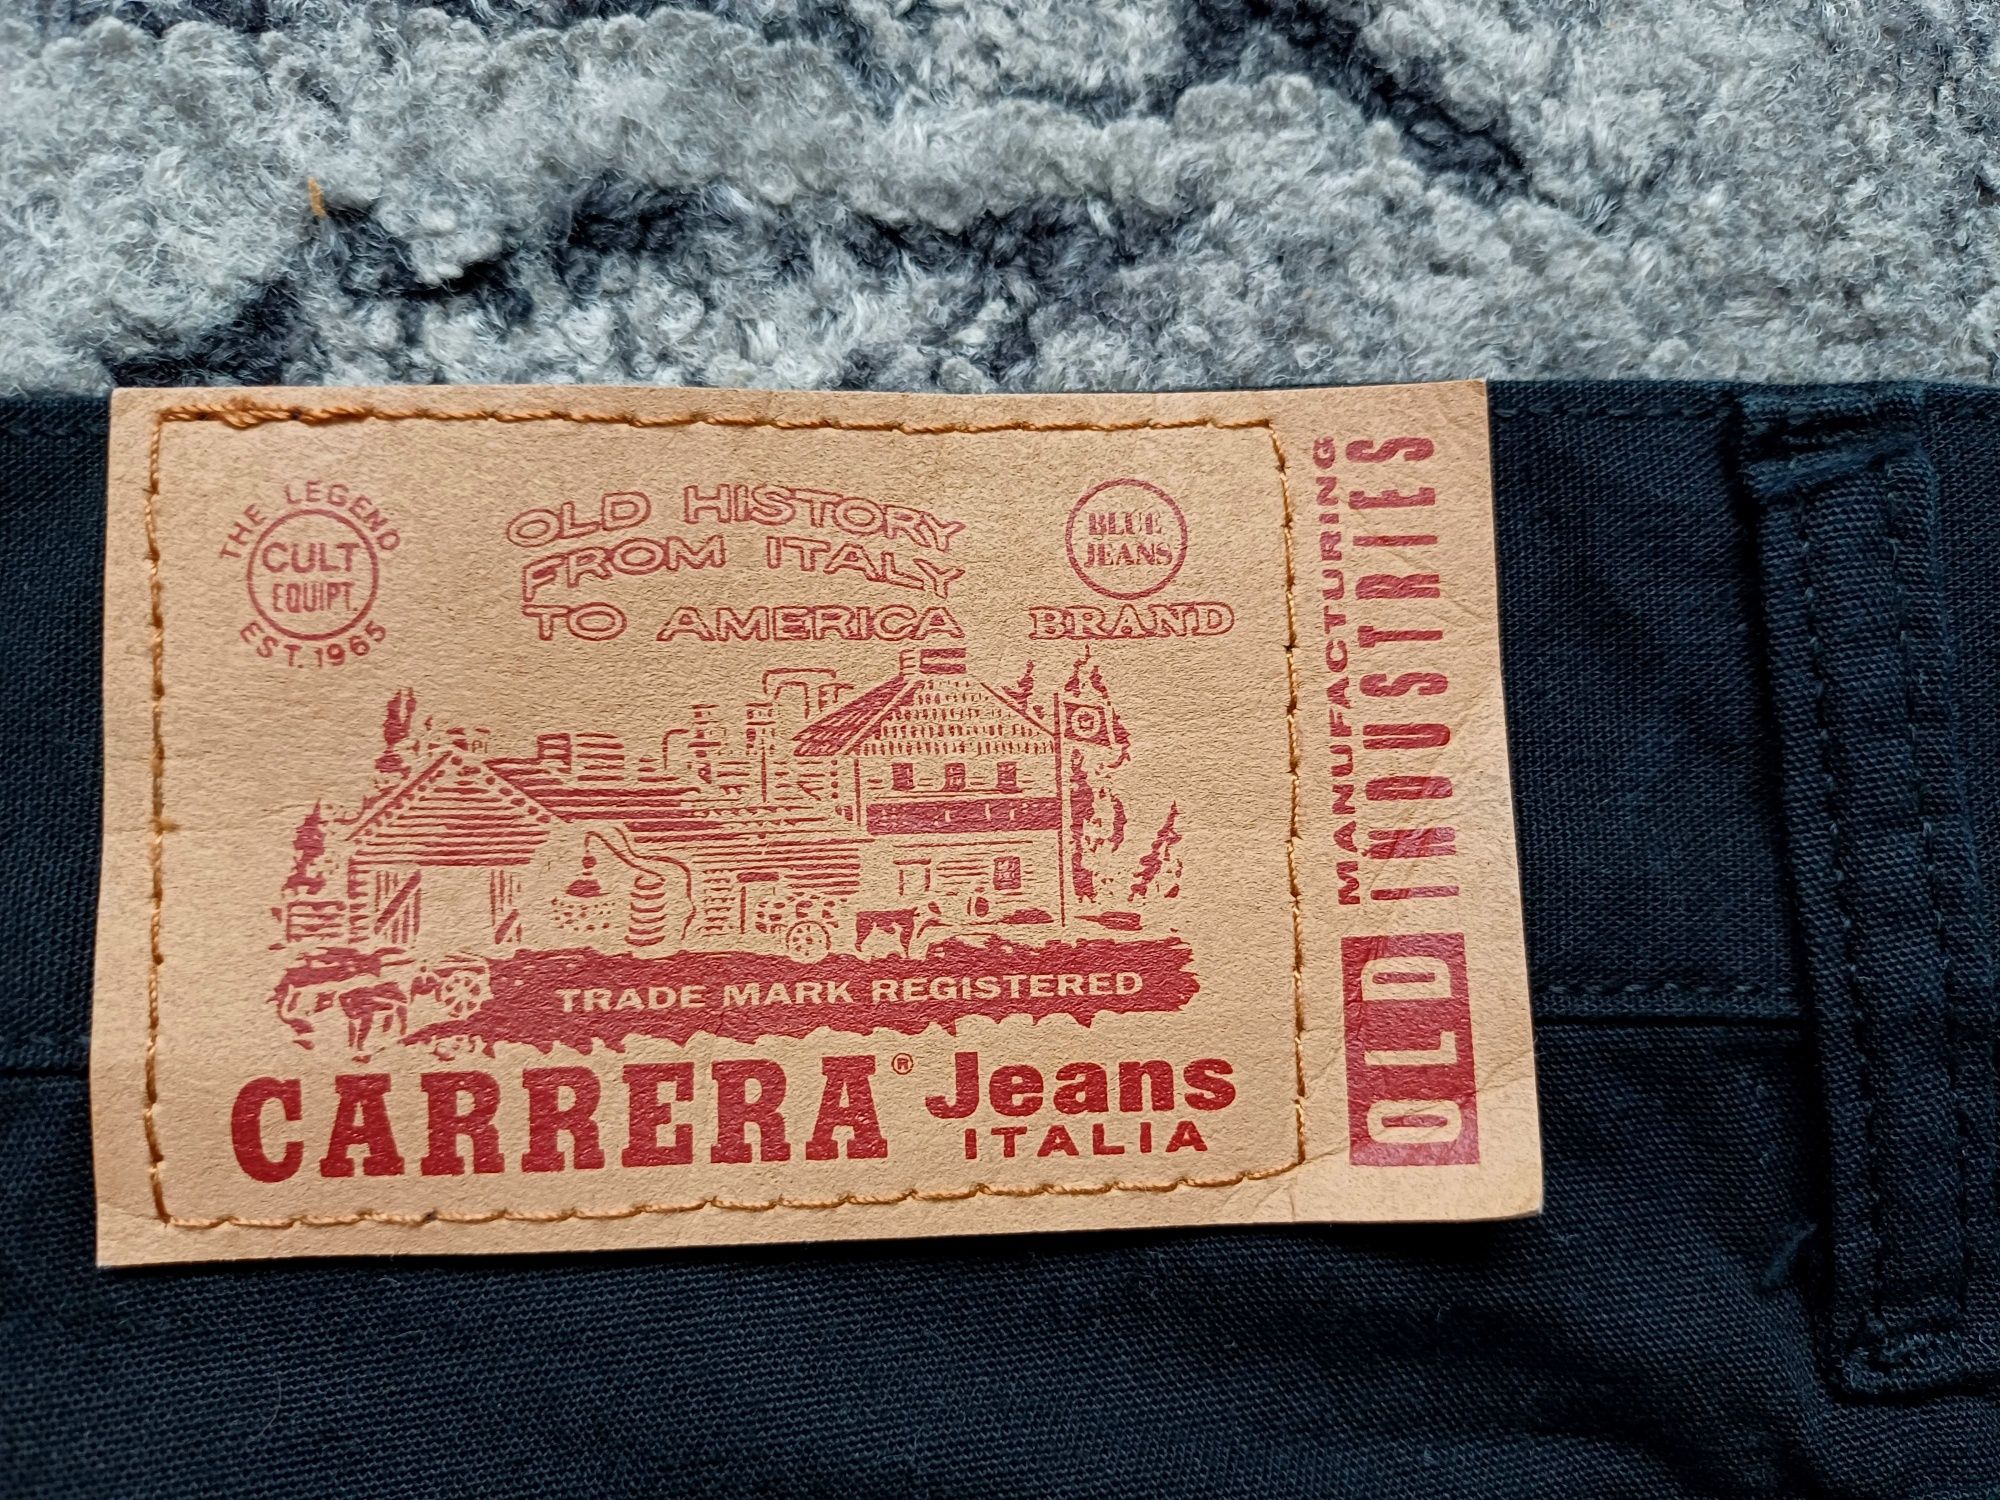 Spodnie Carrera Italia Jeans M bdb stan długie czarne spodnie